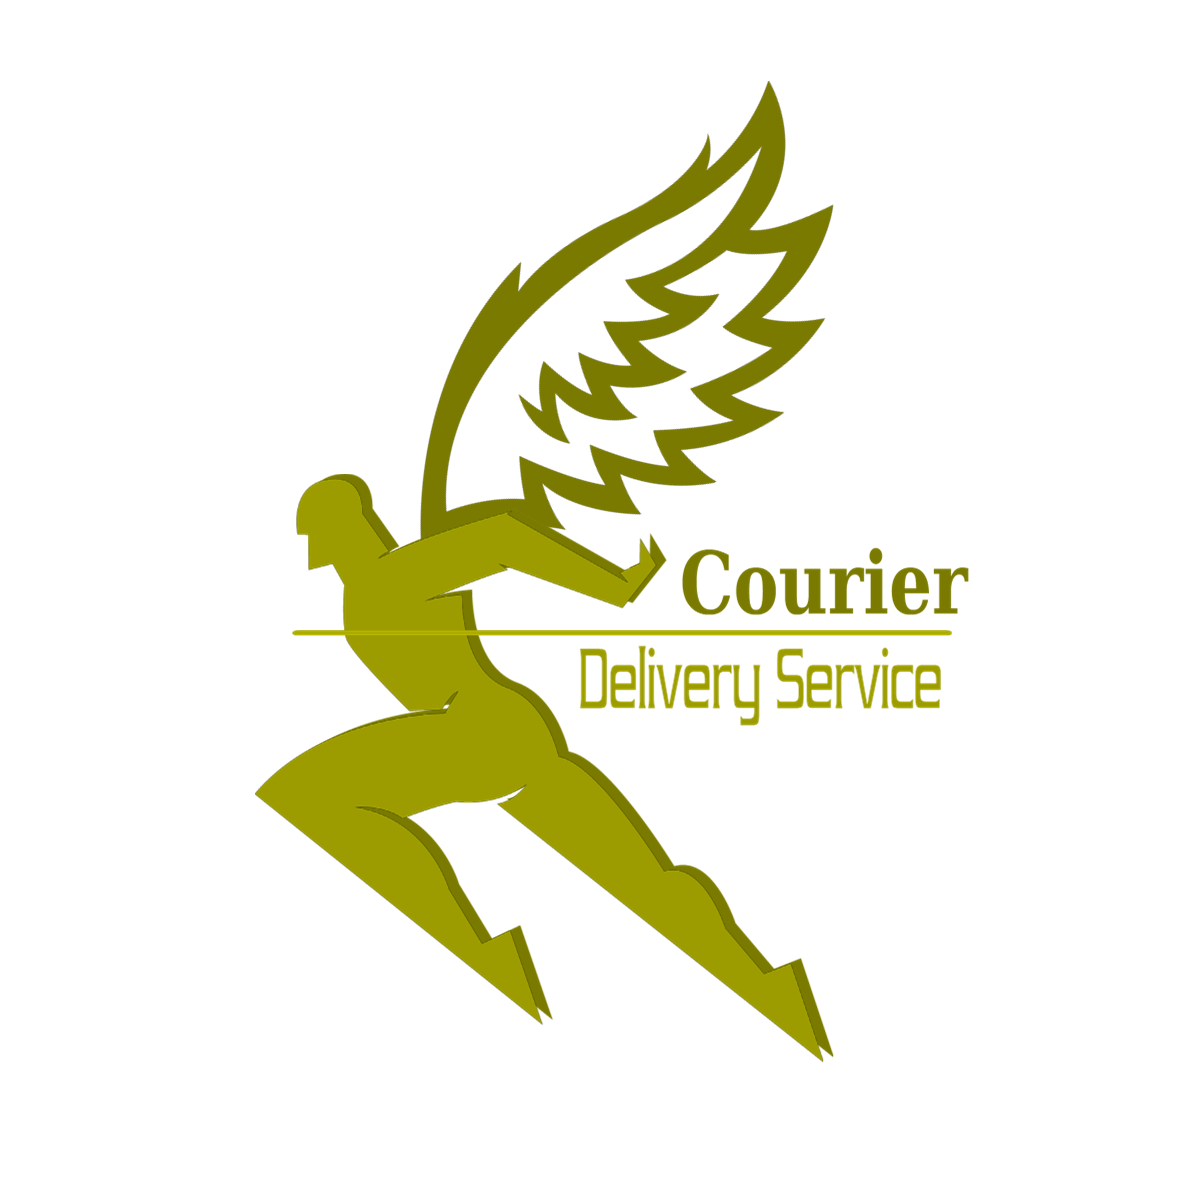 Courier Service Co Logo